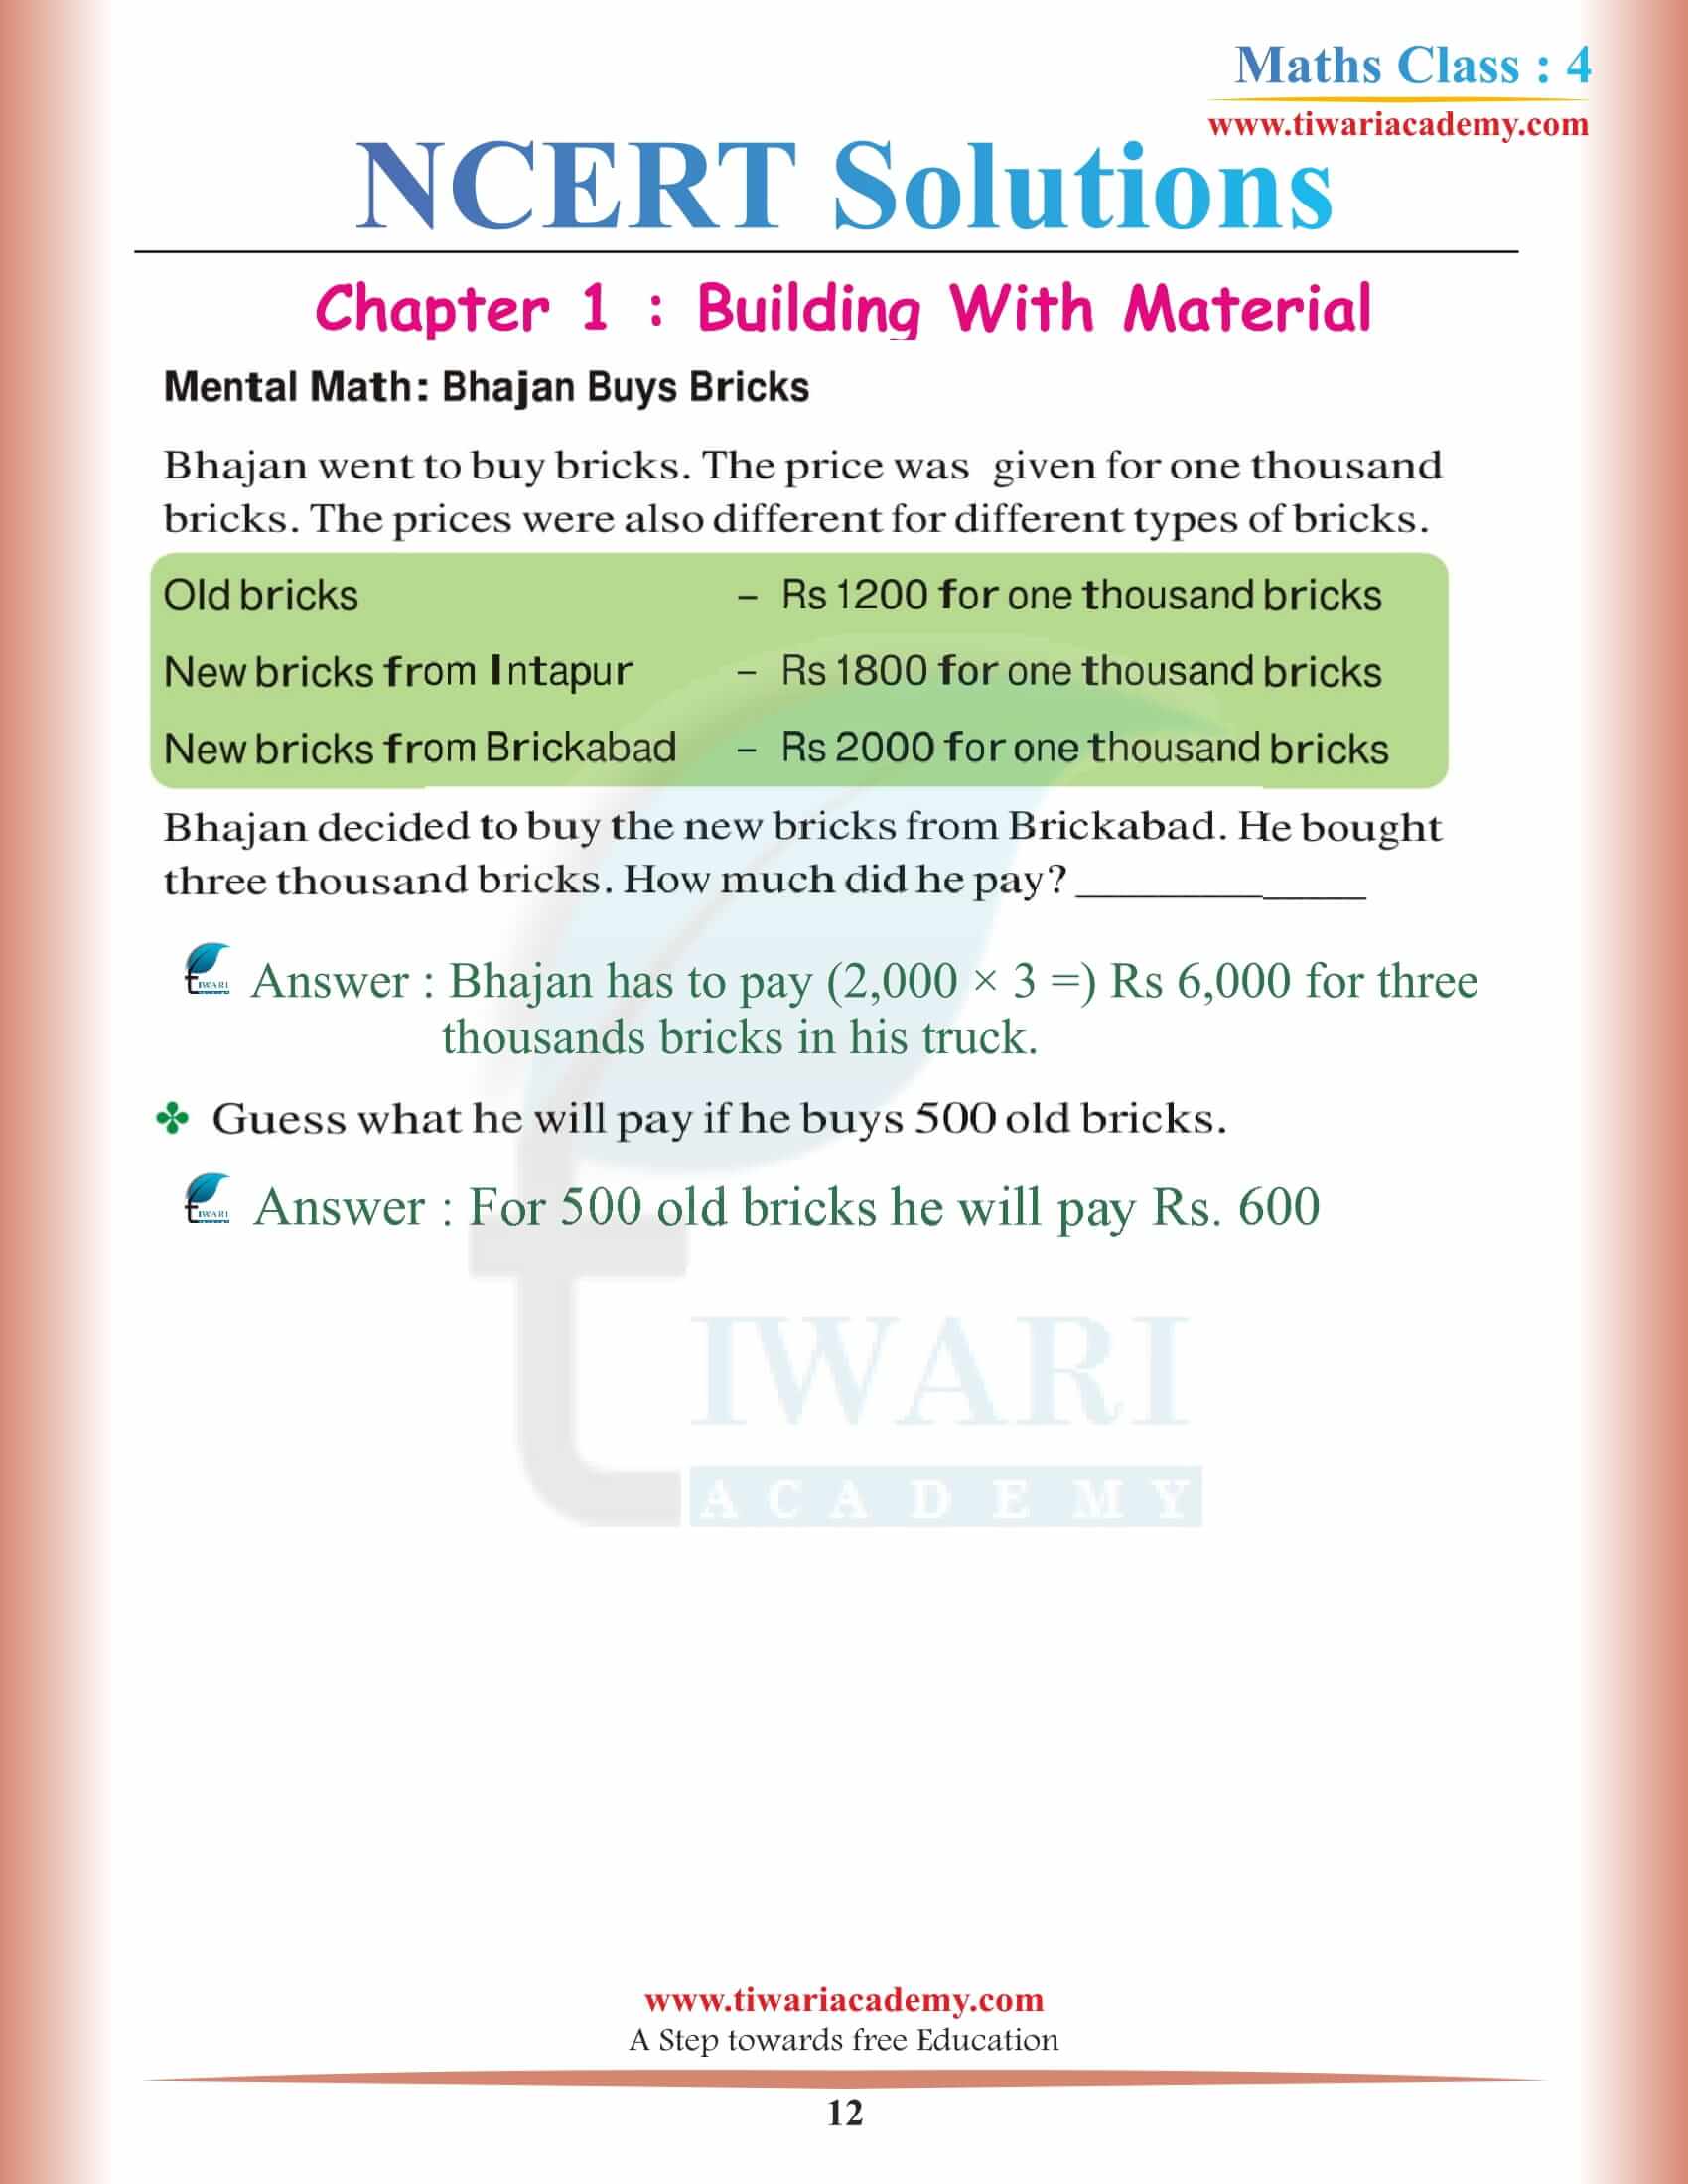 Class 4 Maths NCERT Chapter 1 answers